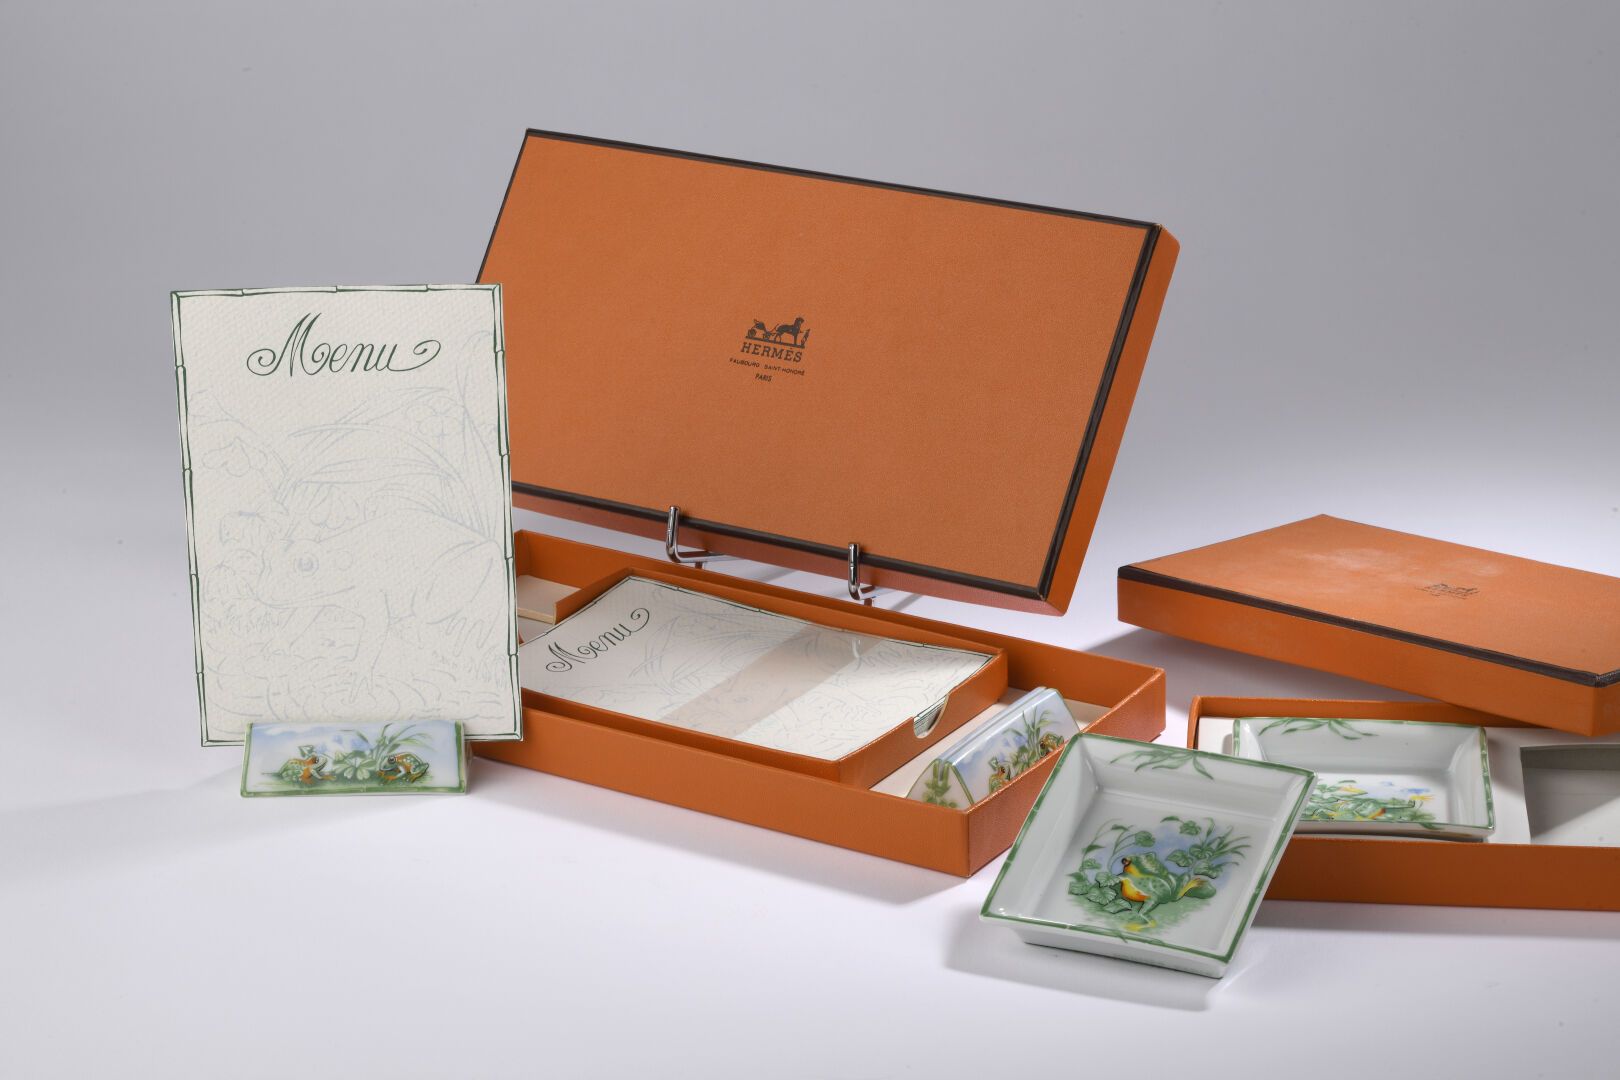 Null HERMÈS巴黎为大众传媒设计。
瓷器套装包括两个ramekins和两个菜单架，以及配套的纸质菜单。 
装在一个盒子里。